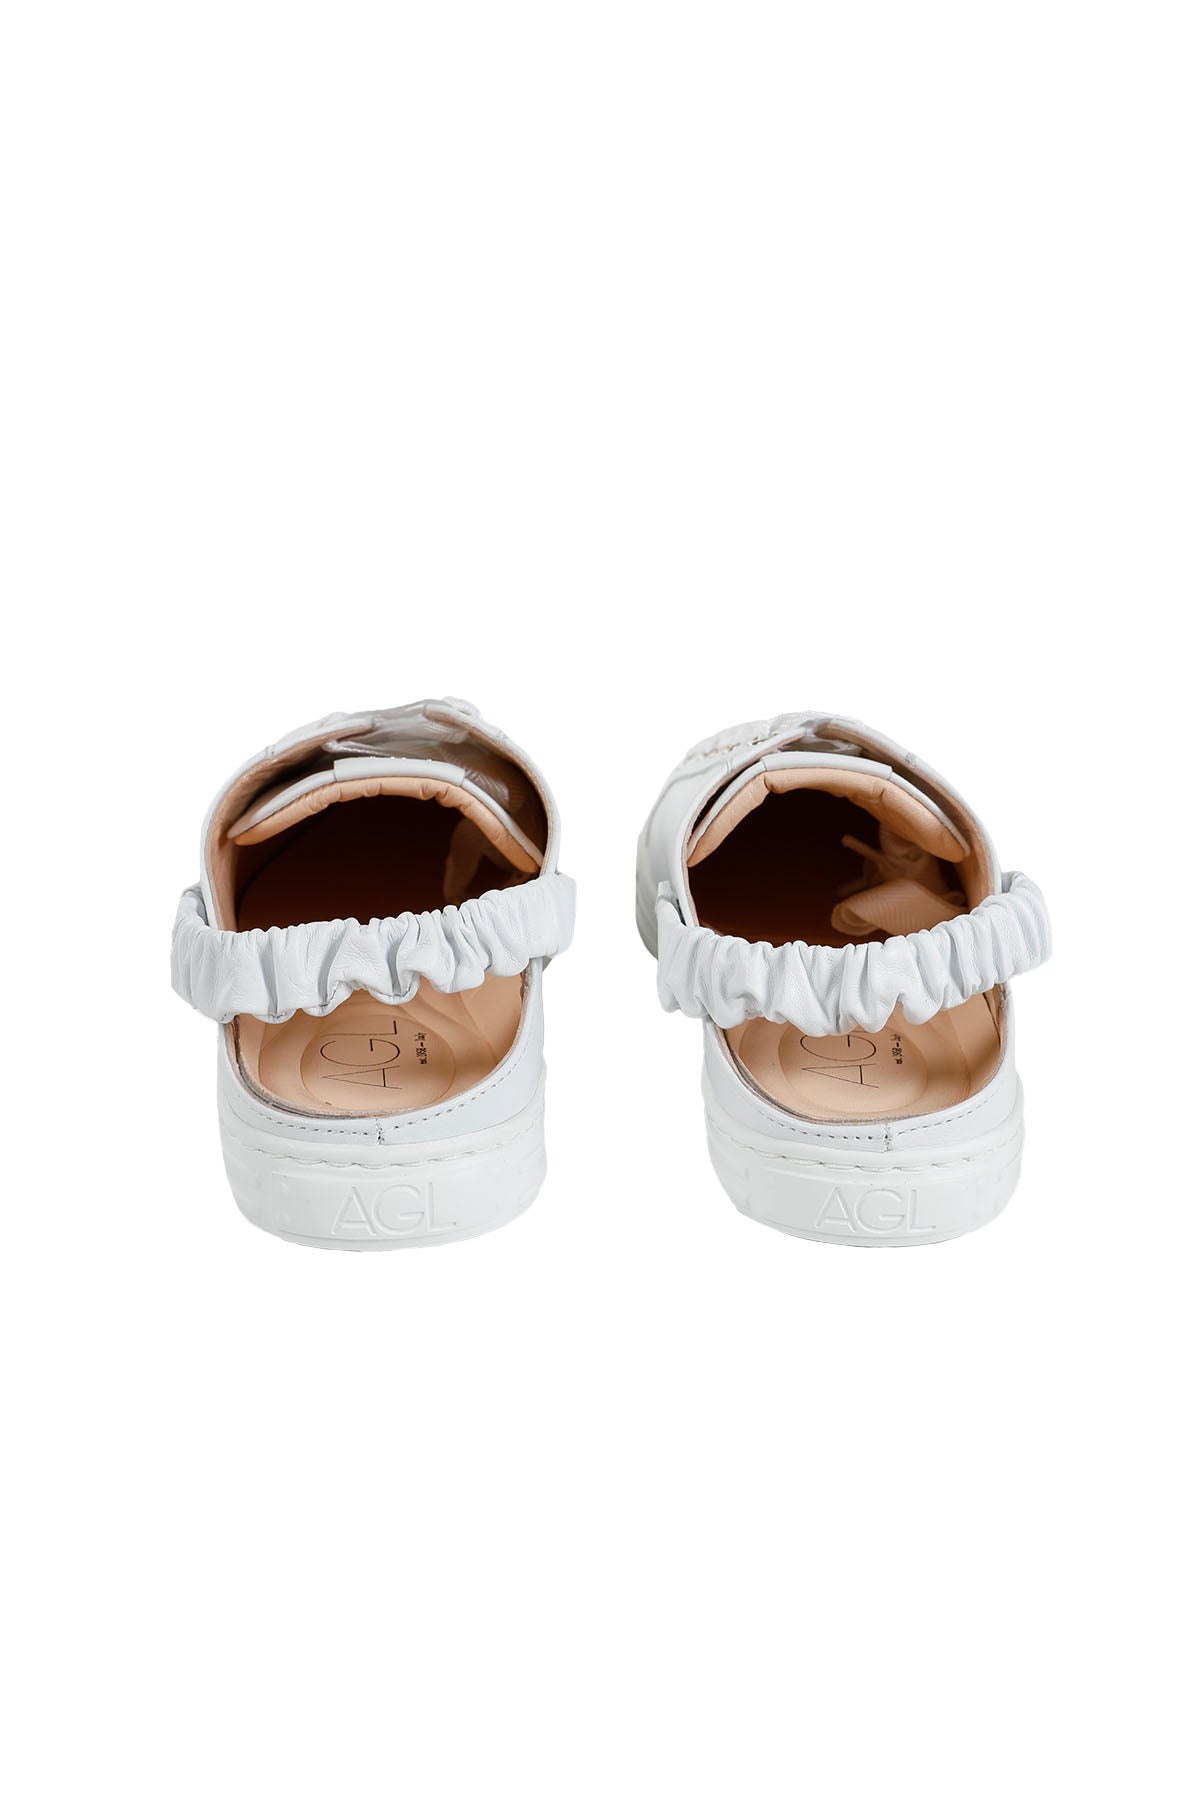 Agl Suzie Terlik Sneaker Ayakkabı-Libas Trendy Fashion Store